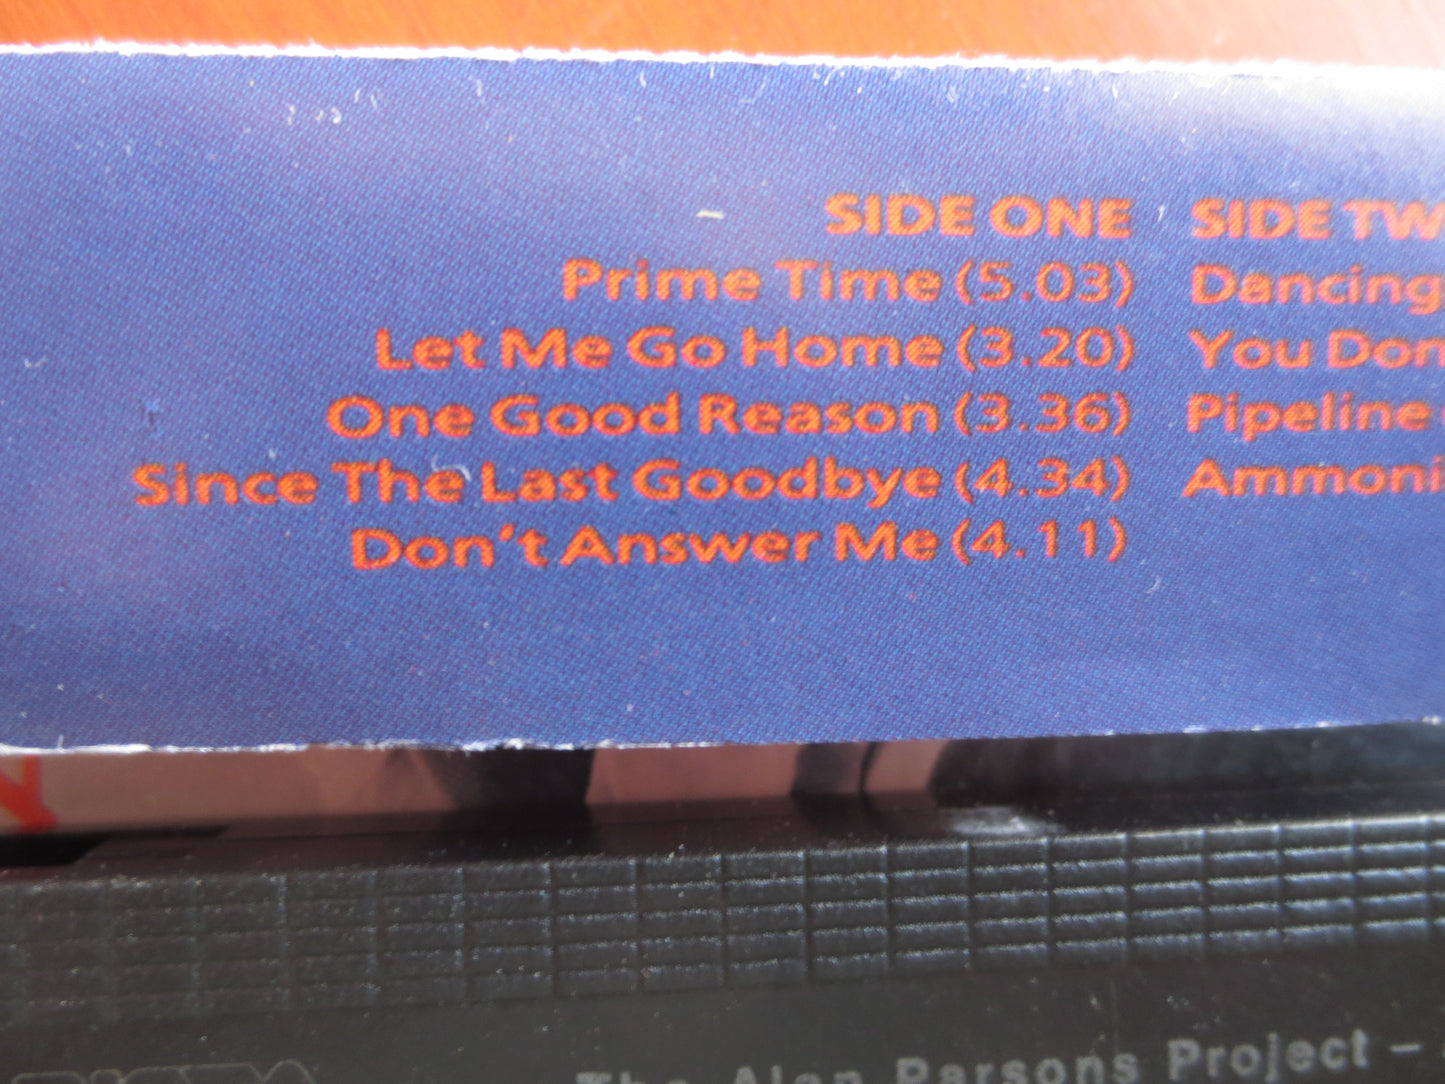 ALAN PARSONS PROJECT, Ammonia Avenue Album, Rock Tape, Alan Parsons Lp, Tape Cassette, Tapes, Rock Cassette, 1984 Cassette